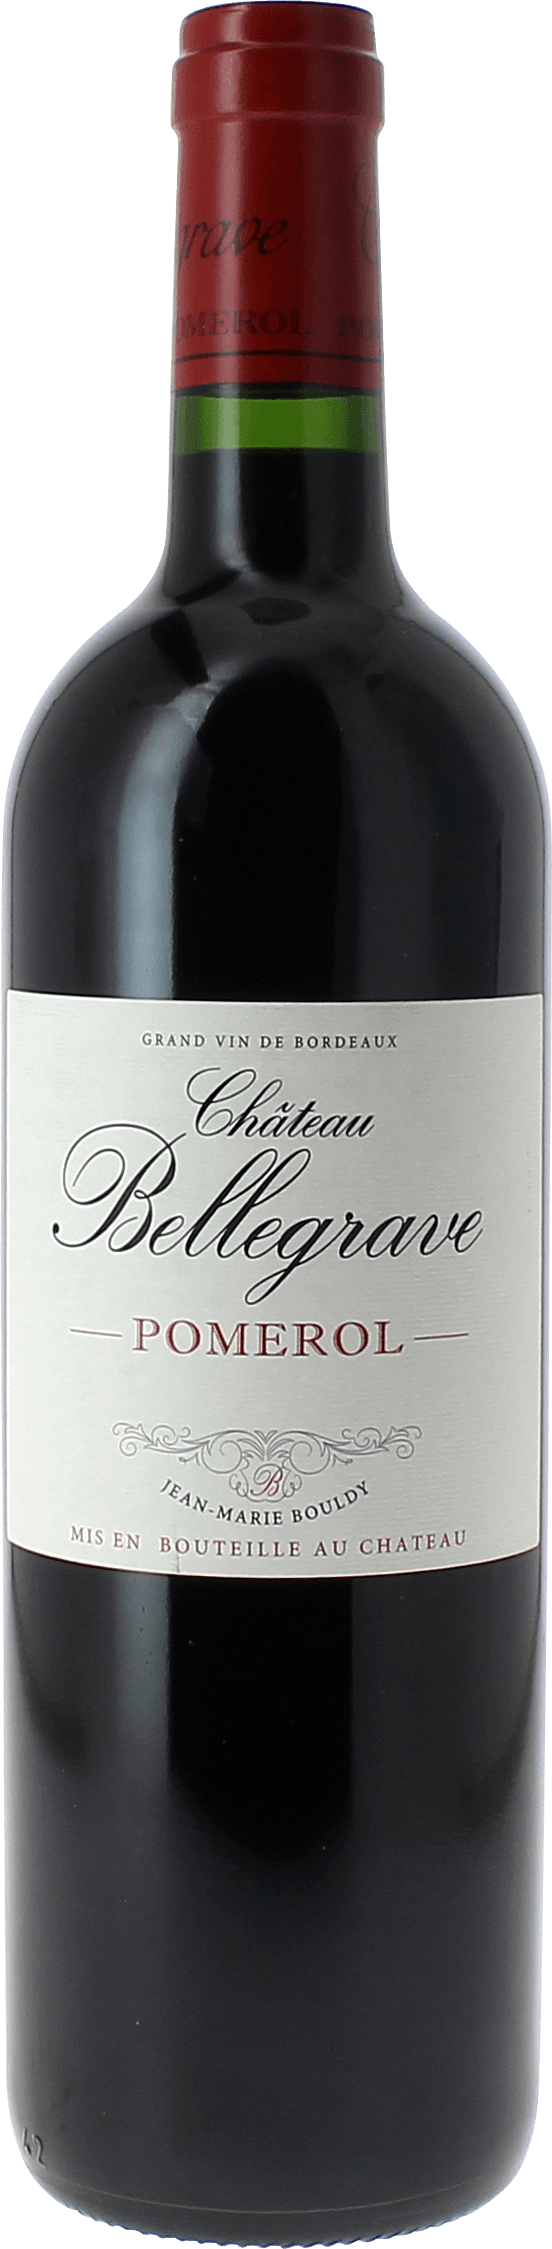 Bellegrave 2004  Pomerol, Bordeaux rouge